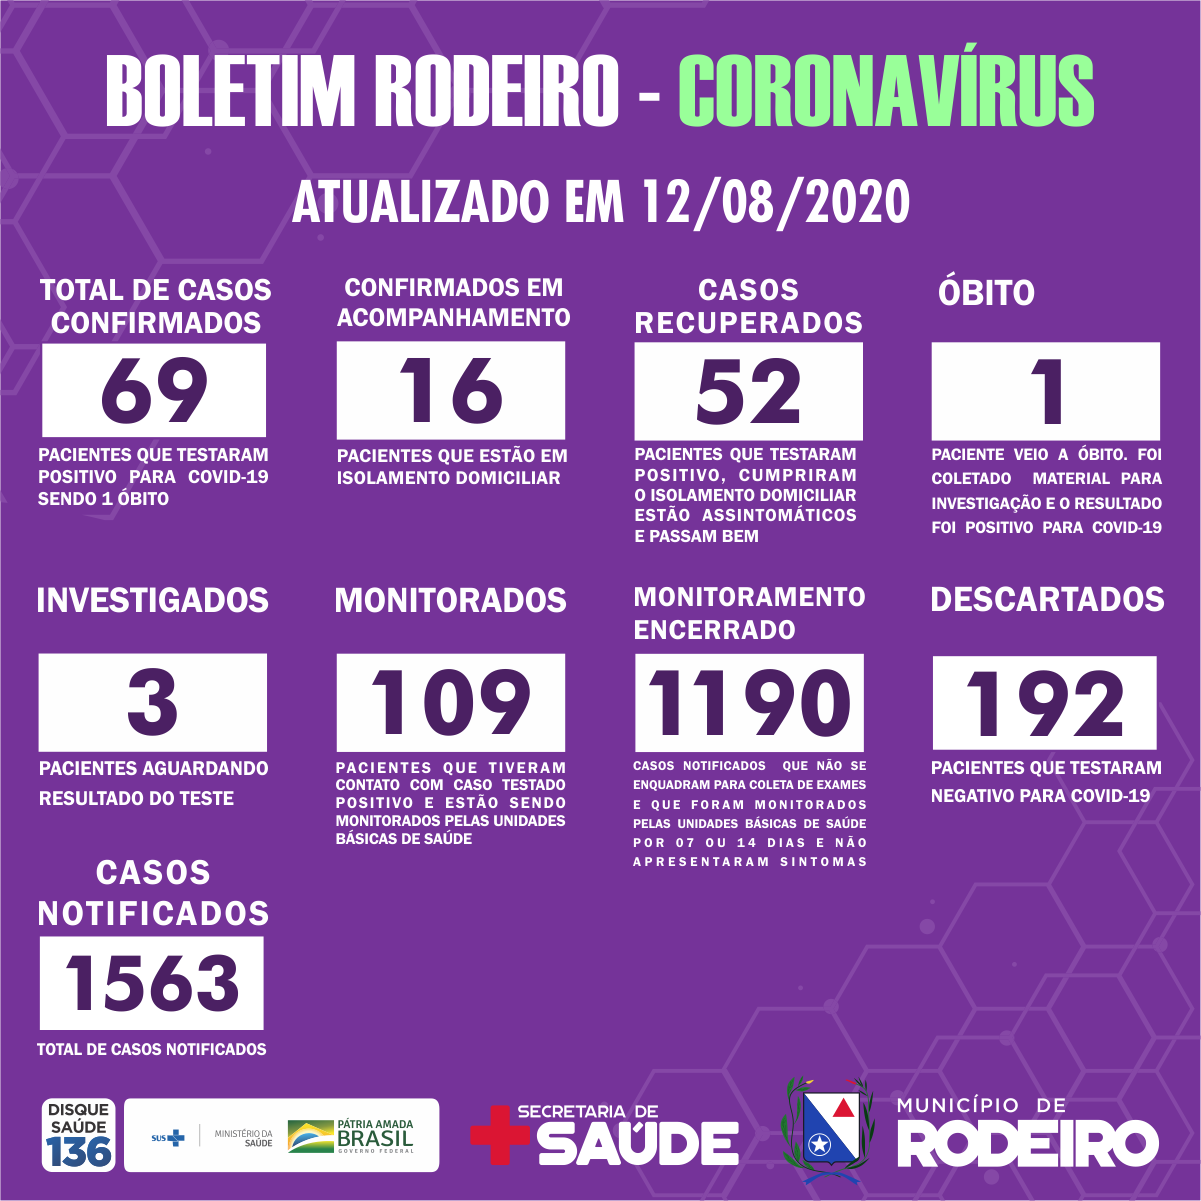 Boletim Epidemiológico do Município de Rodeiro sobre coronavírus, atualizado em 12/08/2020